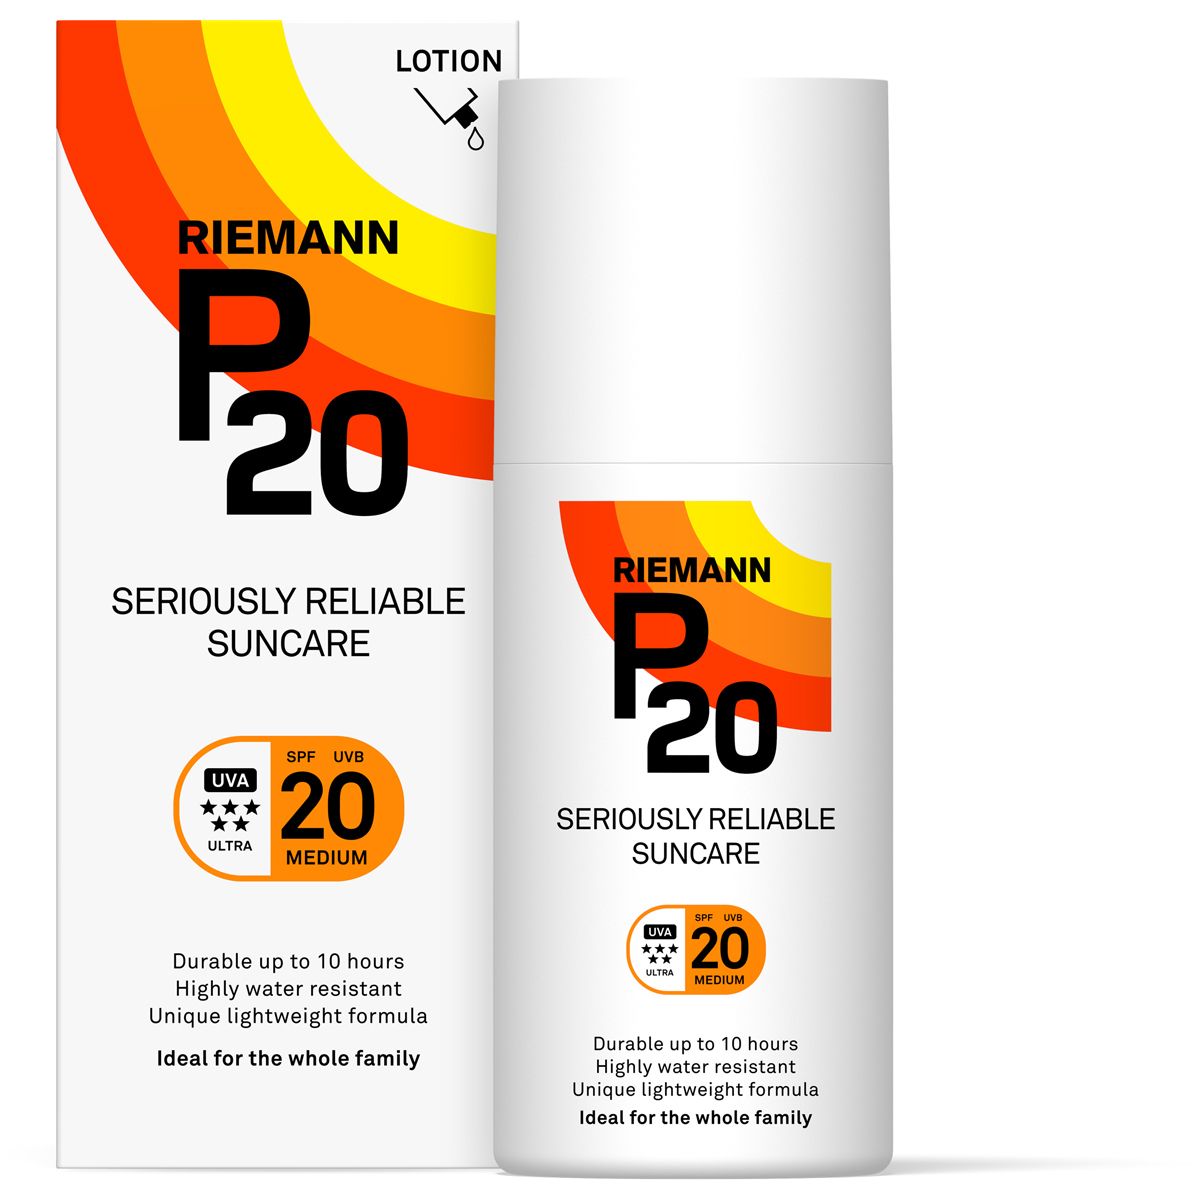 Køb Riemann P20 Lotion SPF 20 - ml - billigt hos med24.dk